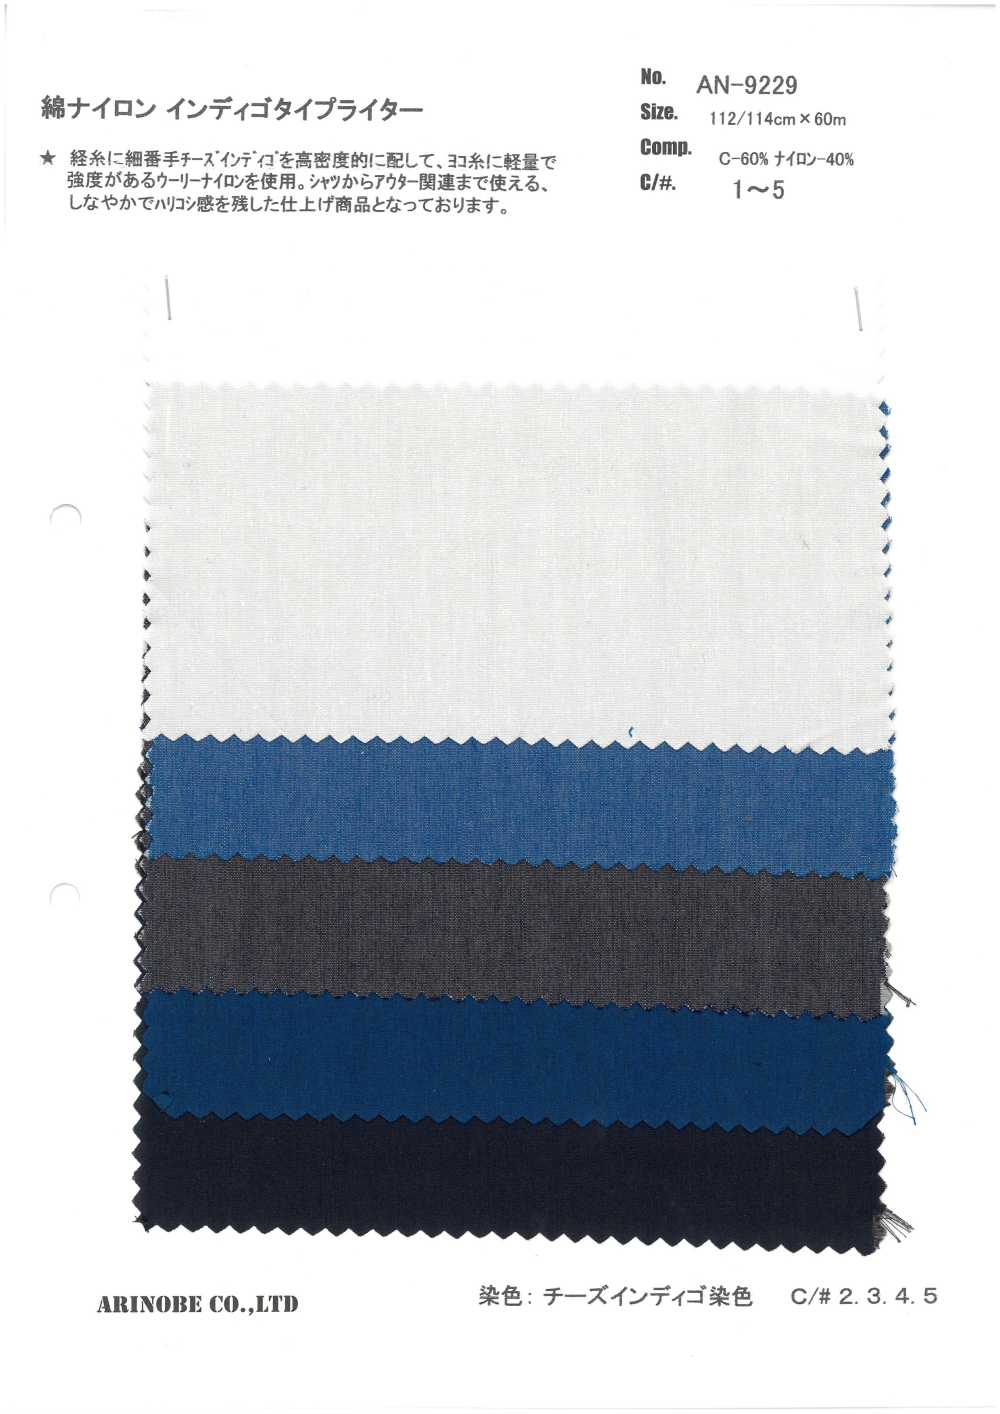 AN-9229 Baumwoll-/Nylon-Indigo-Schreibmaschinentuch[Textilgewebe] ARINOBE CO., LTD.